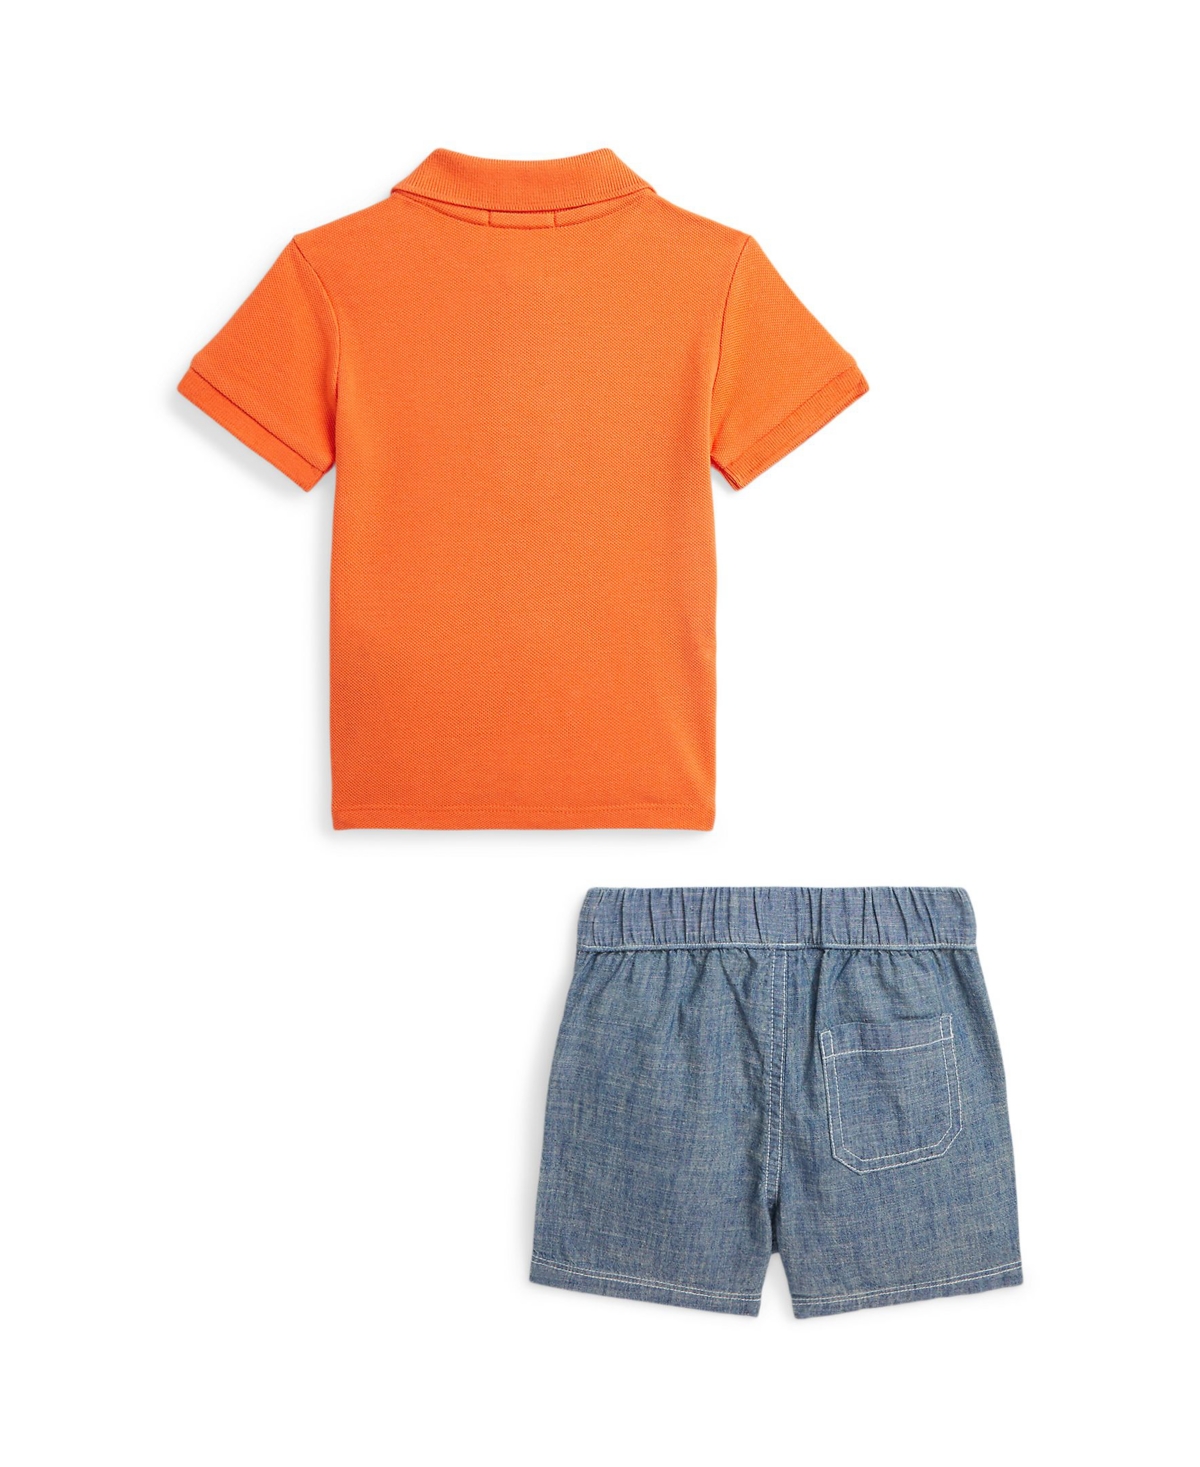 Shop Polo Ralph Lauren Baby Boys Polo Bear Cotton Polo Shirt And Shorts Set In Summer Coral